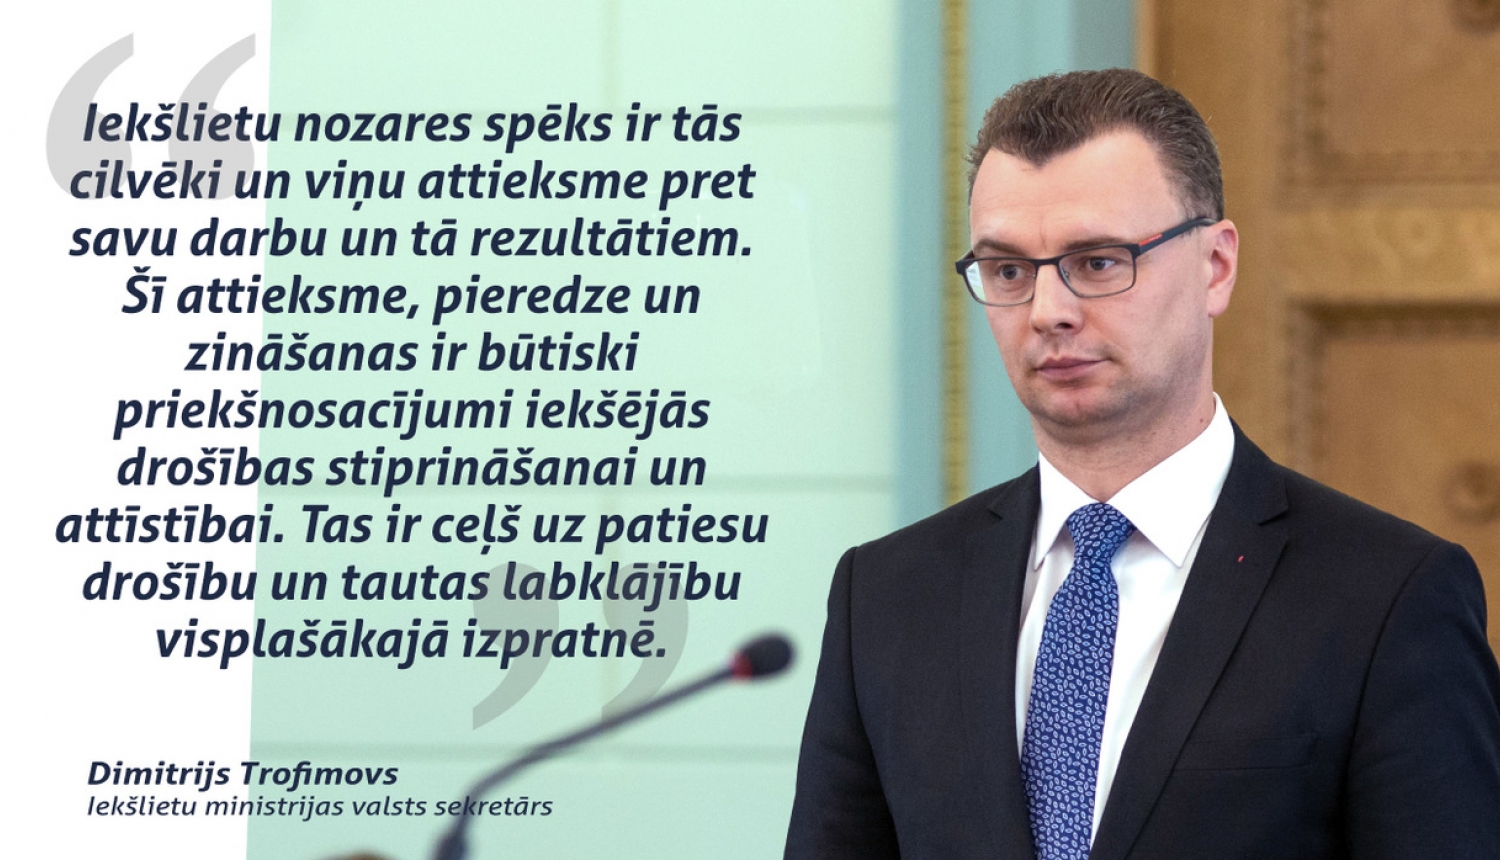 Par Iekšlietu ministrijas valsts sekretāru apstiprināts Dimitrijs Trofimovs